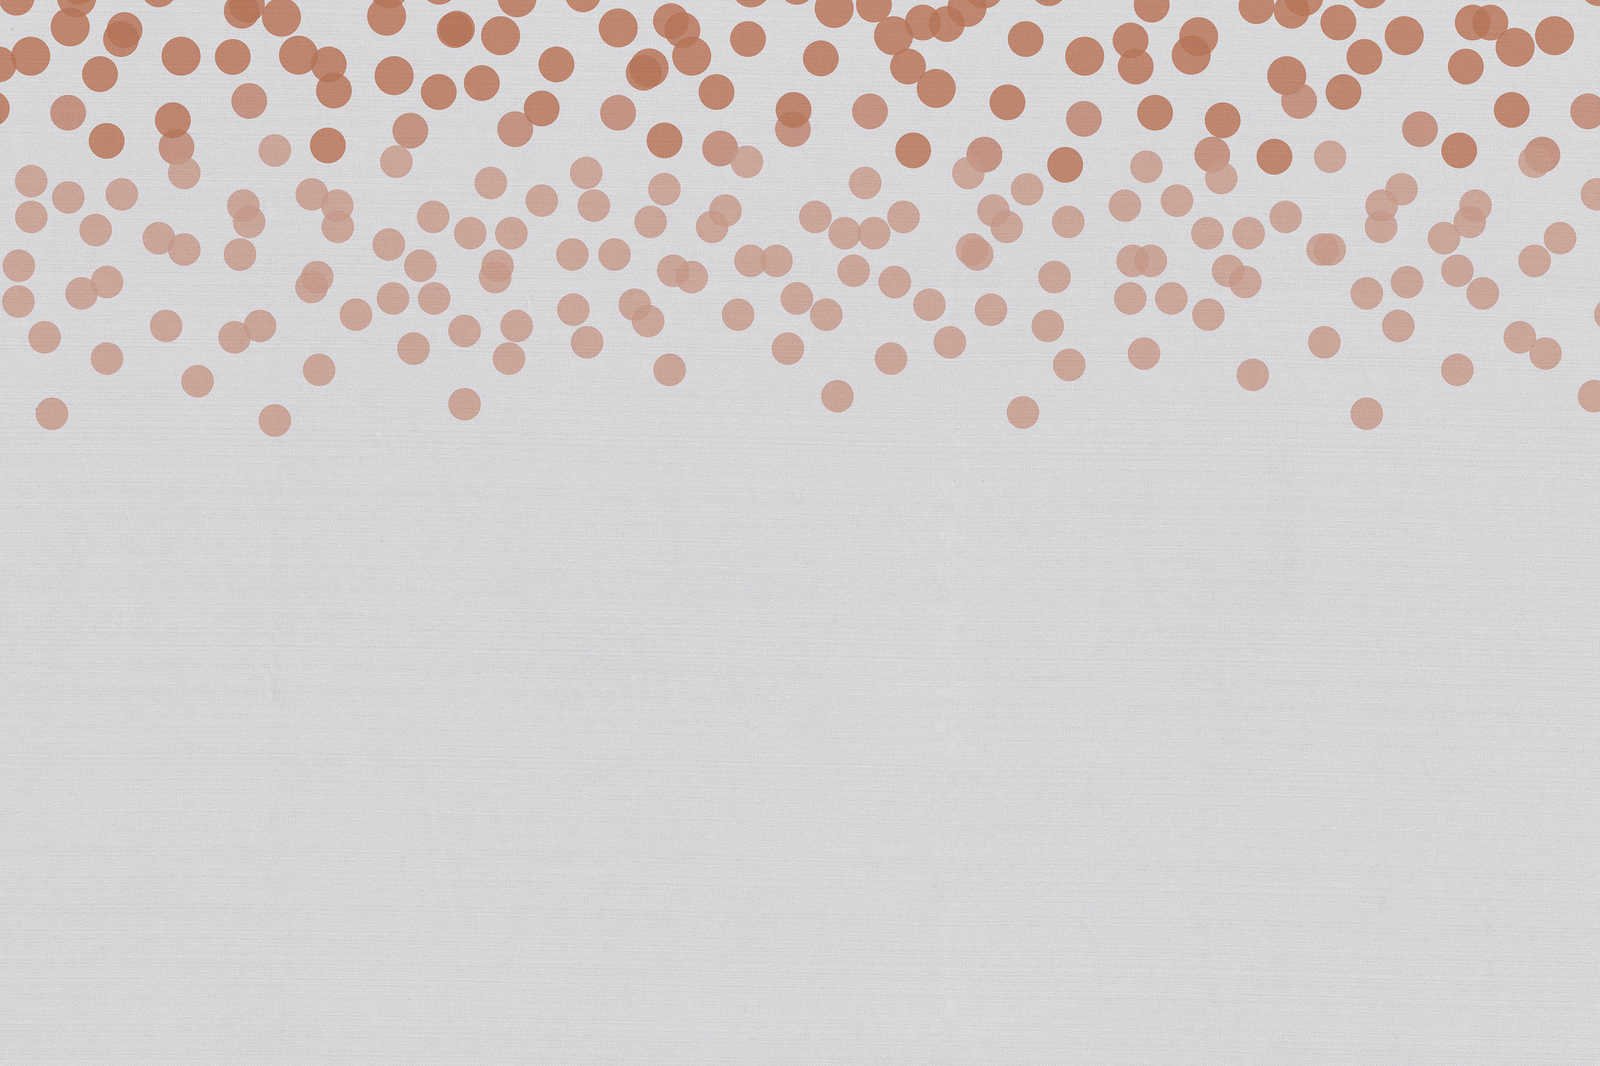             Toile avec motif de points discrets | rouge, gris - 0,90 m x 0,60 m
        